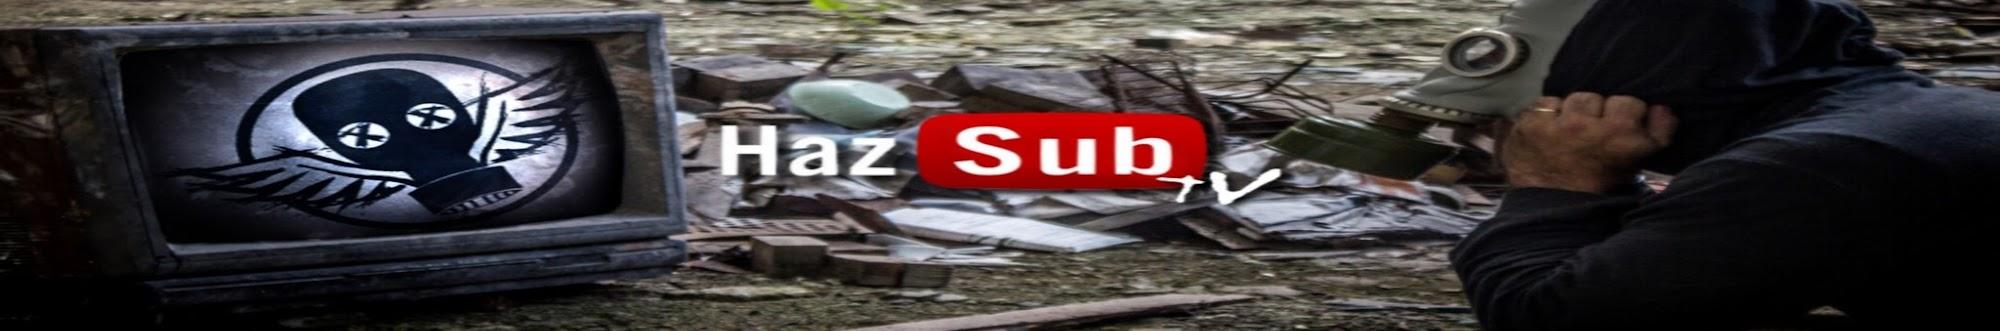 HazSub TV